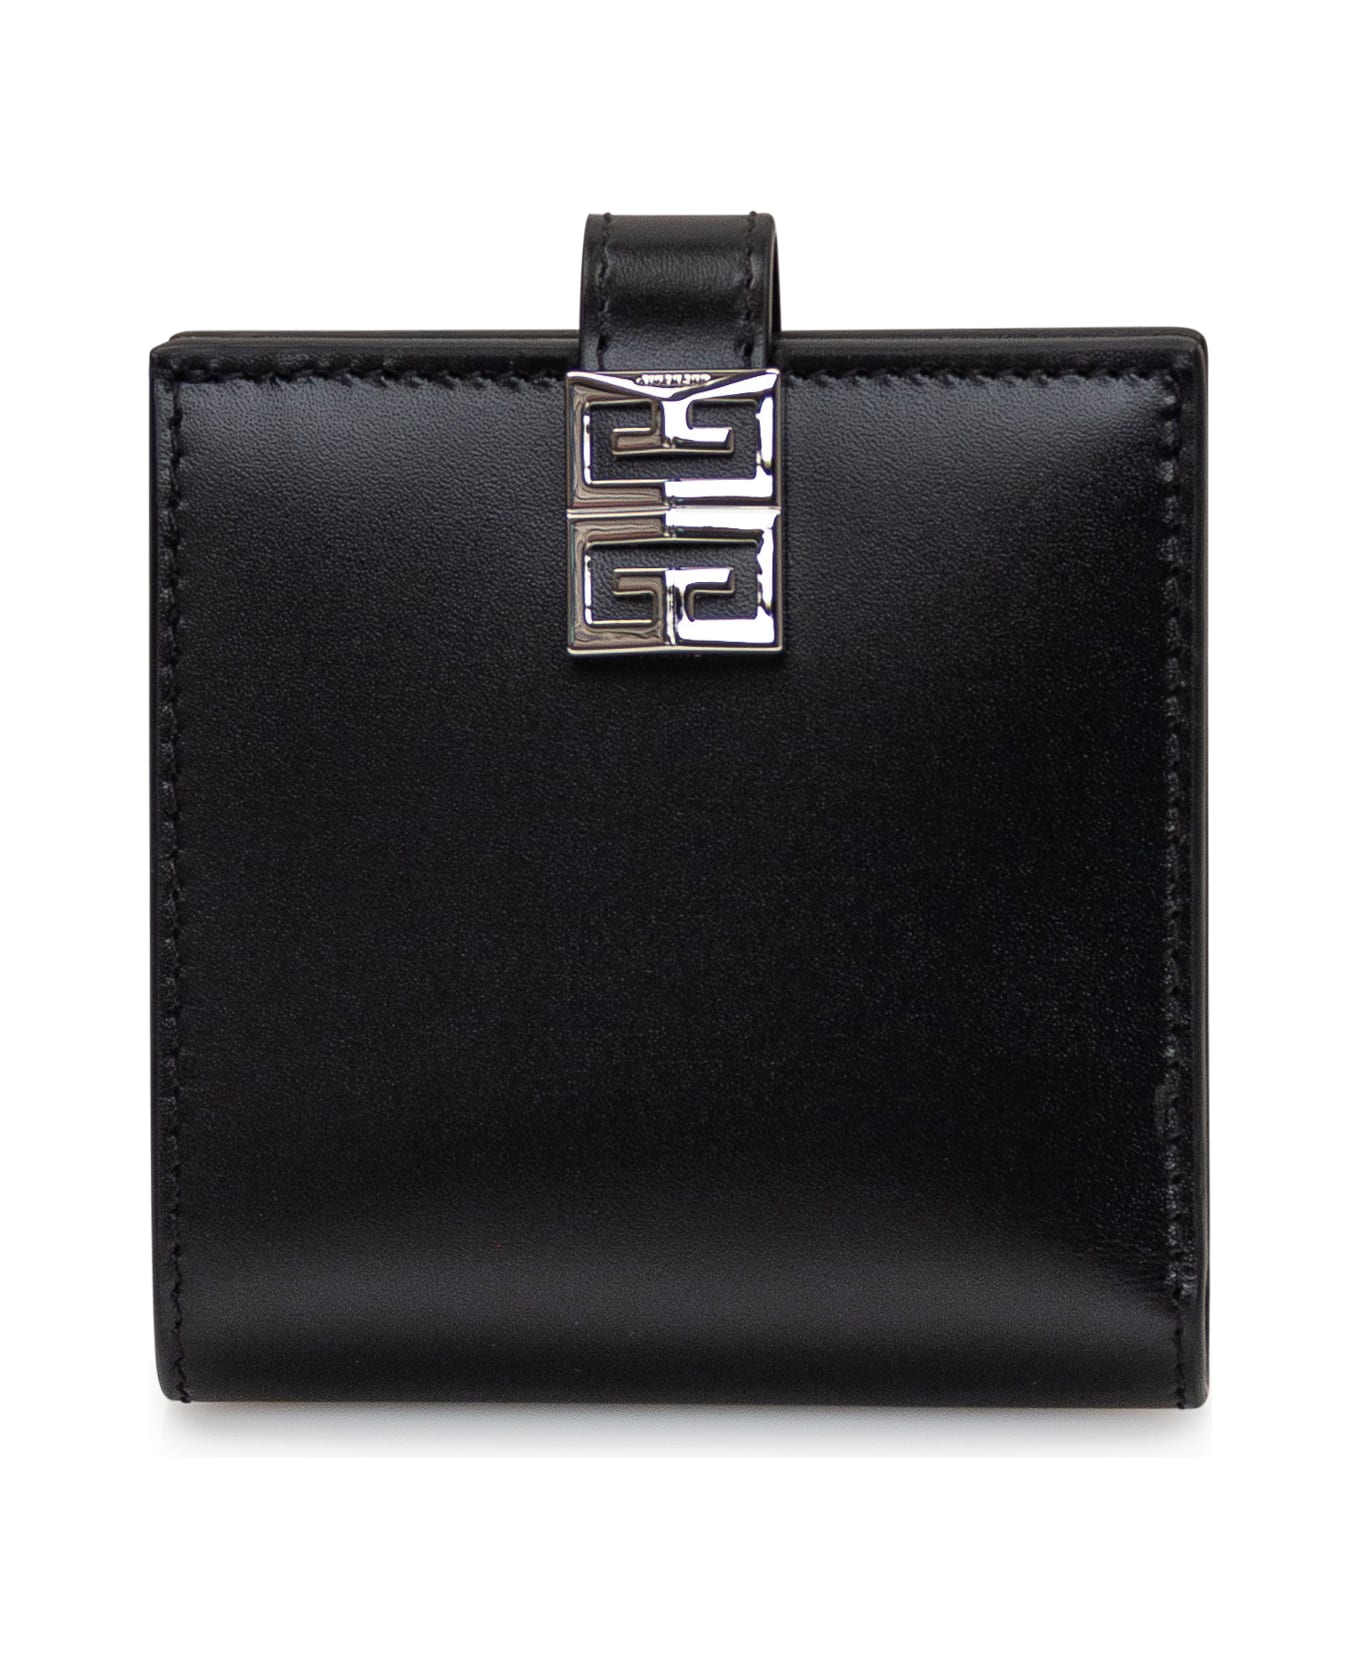 Givenchy 4g Card Holder - BLACK